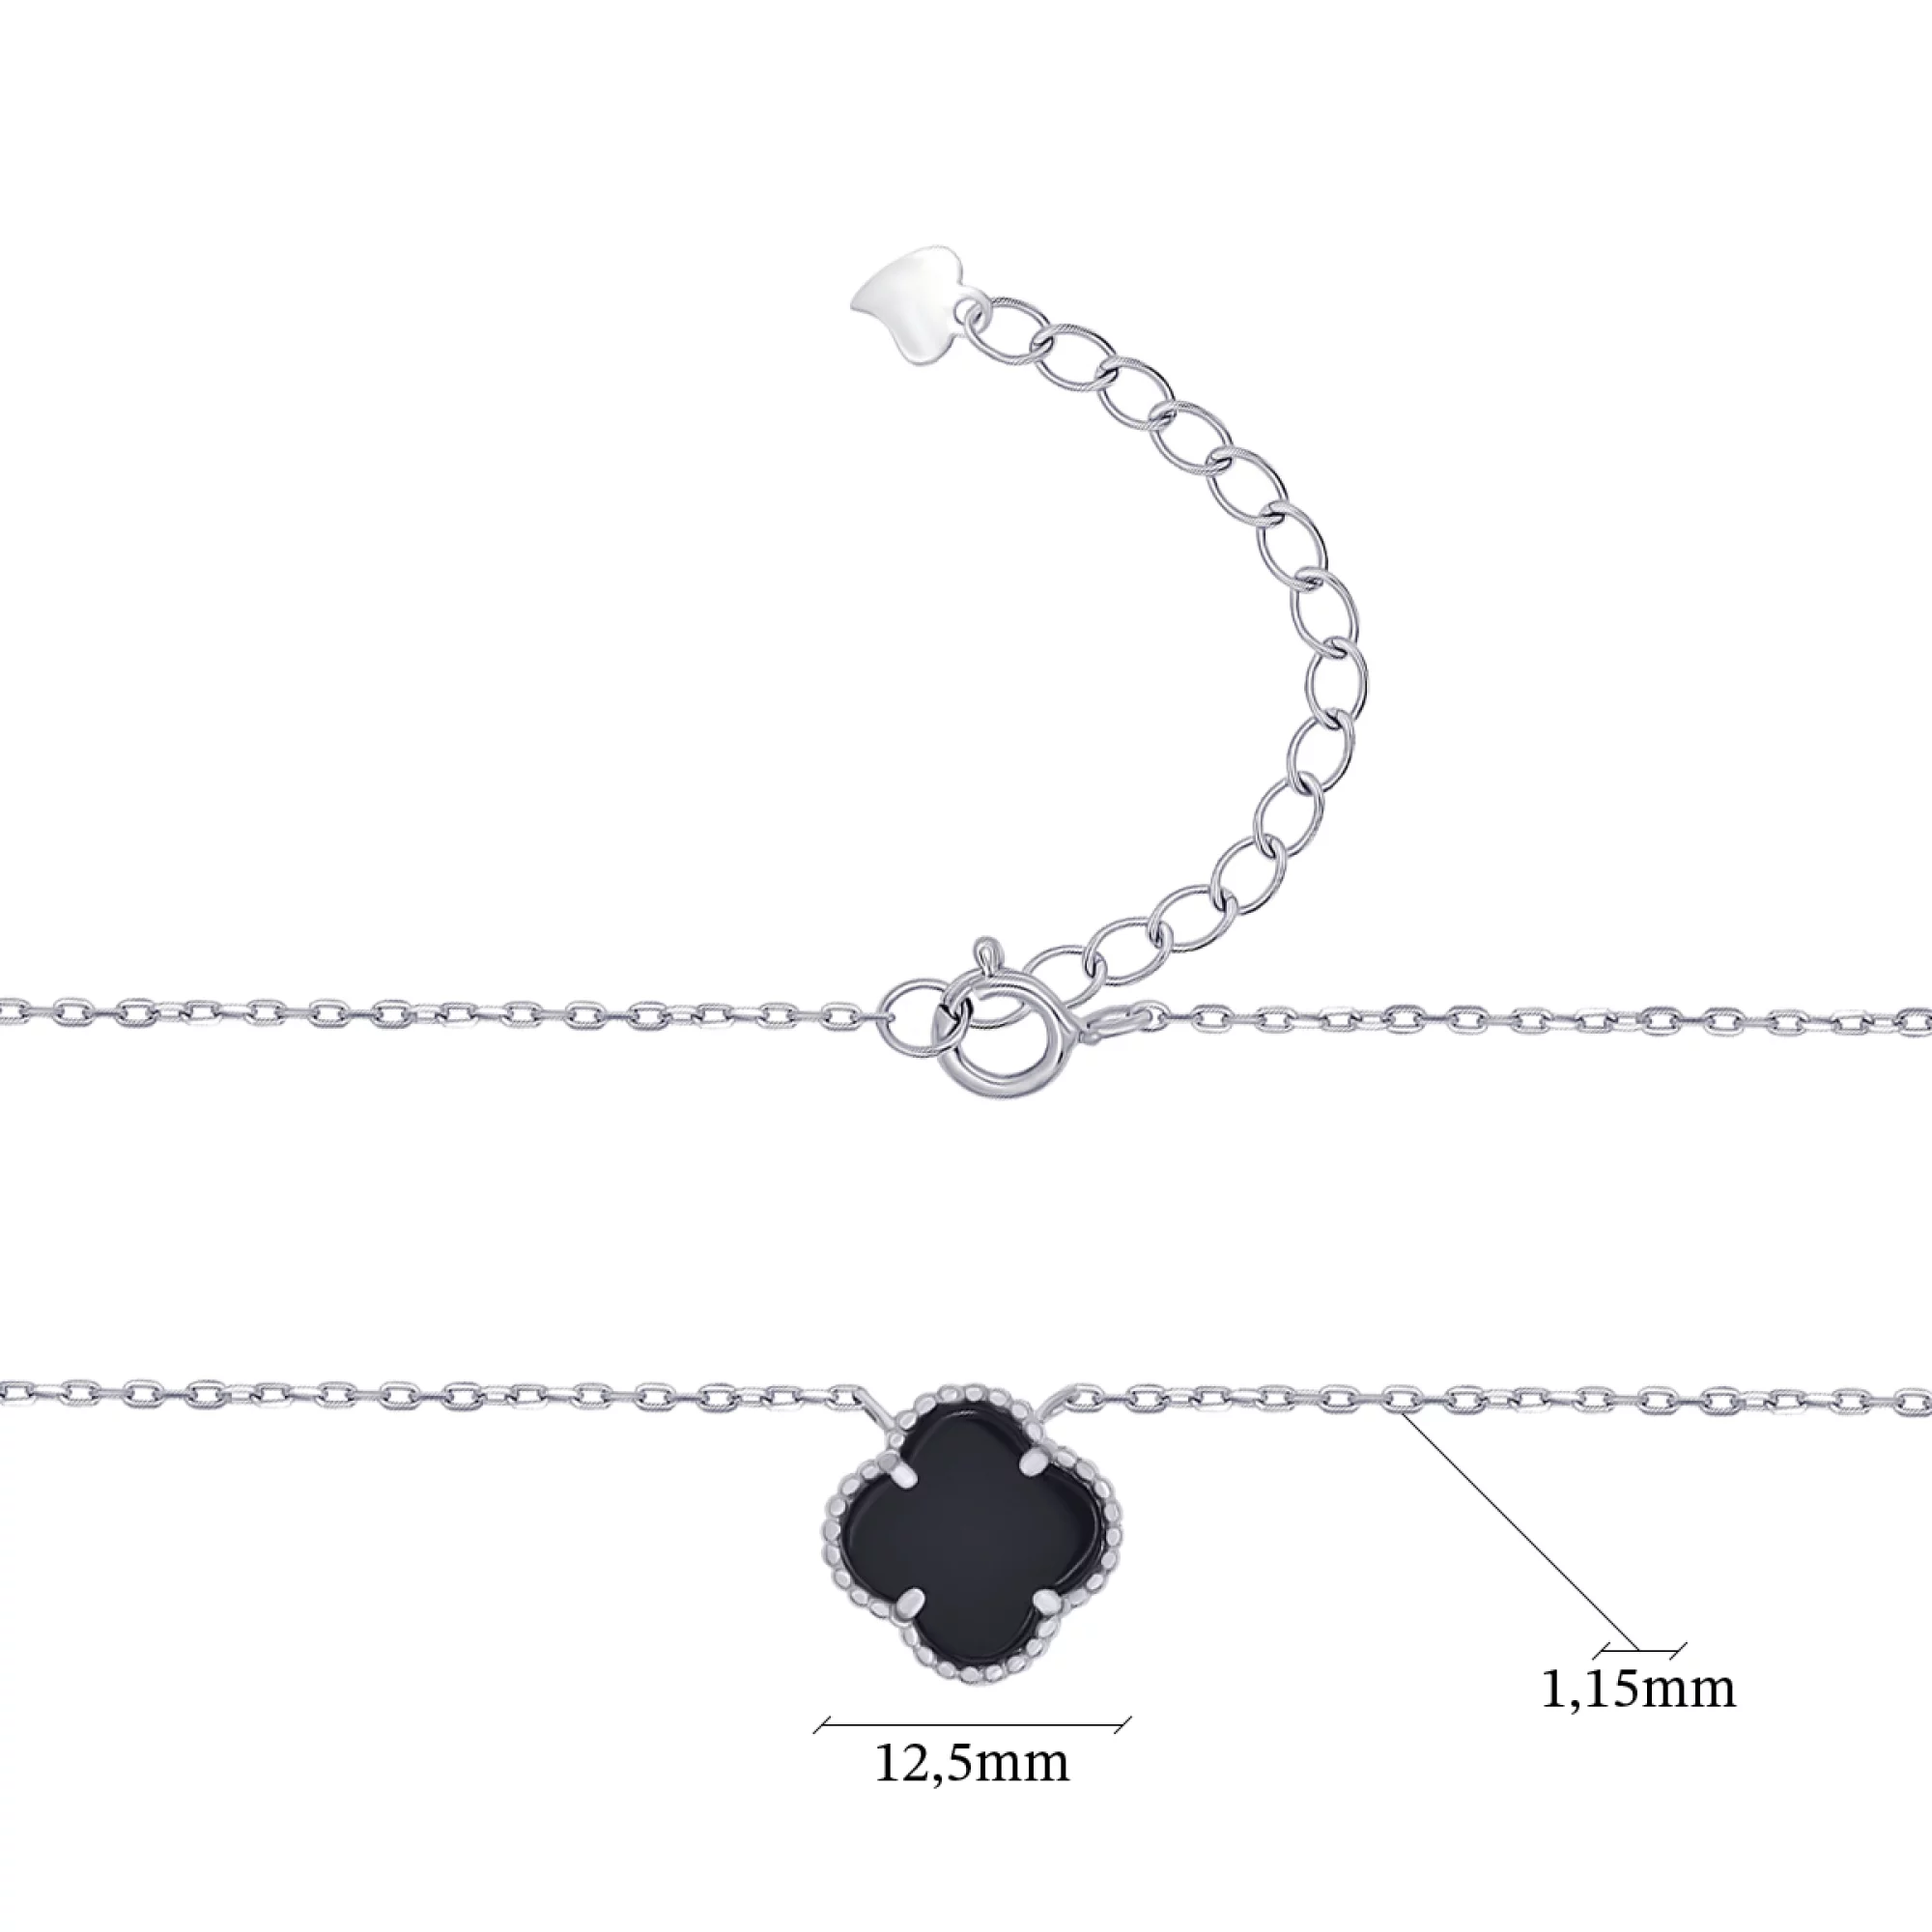 Колье серебряное с ониксом Клевер в Якорном плетении - 973438 – изображение 4